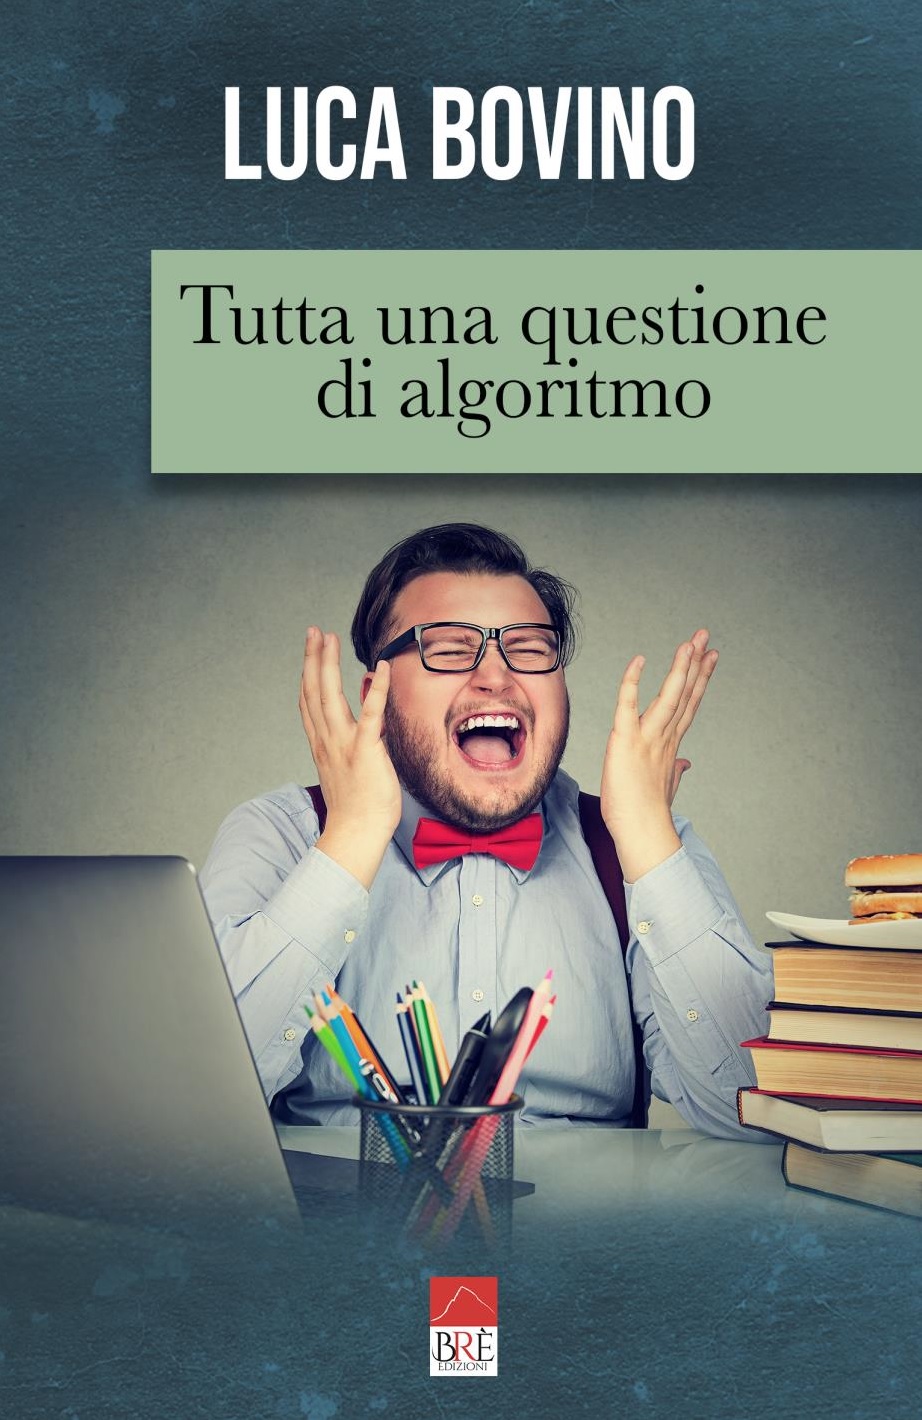 “Tutta una questione di algoritmo”, il primo romanzo di Luca Bovino